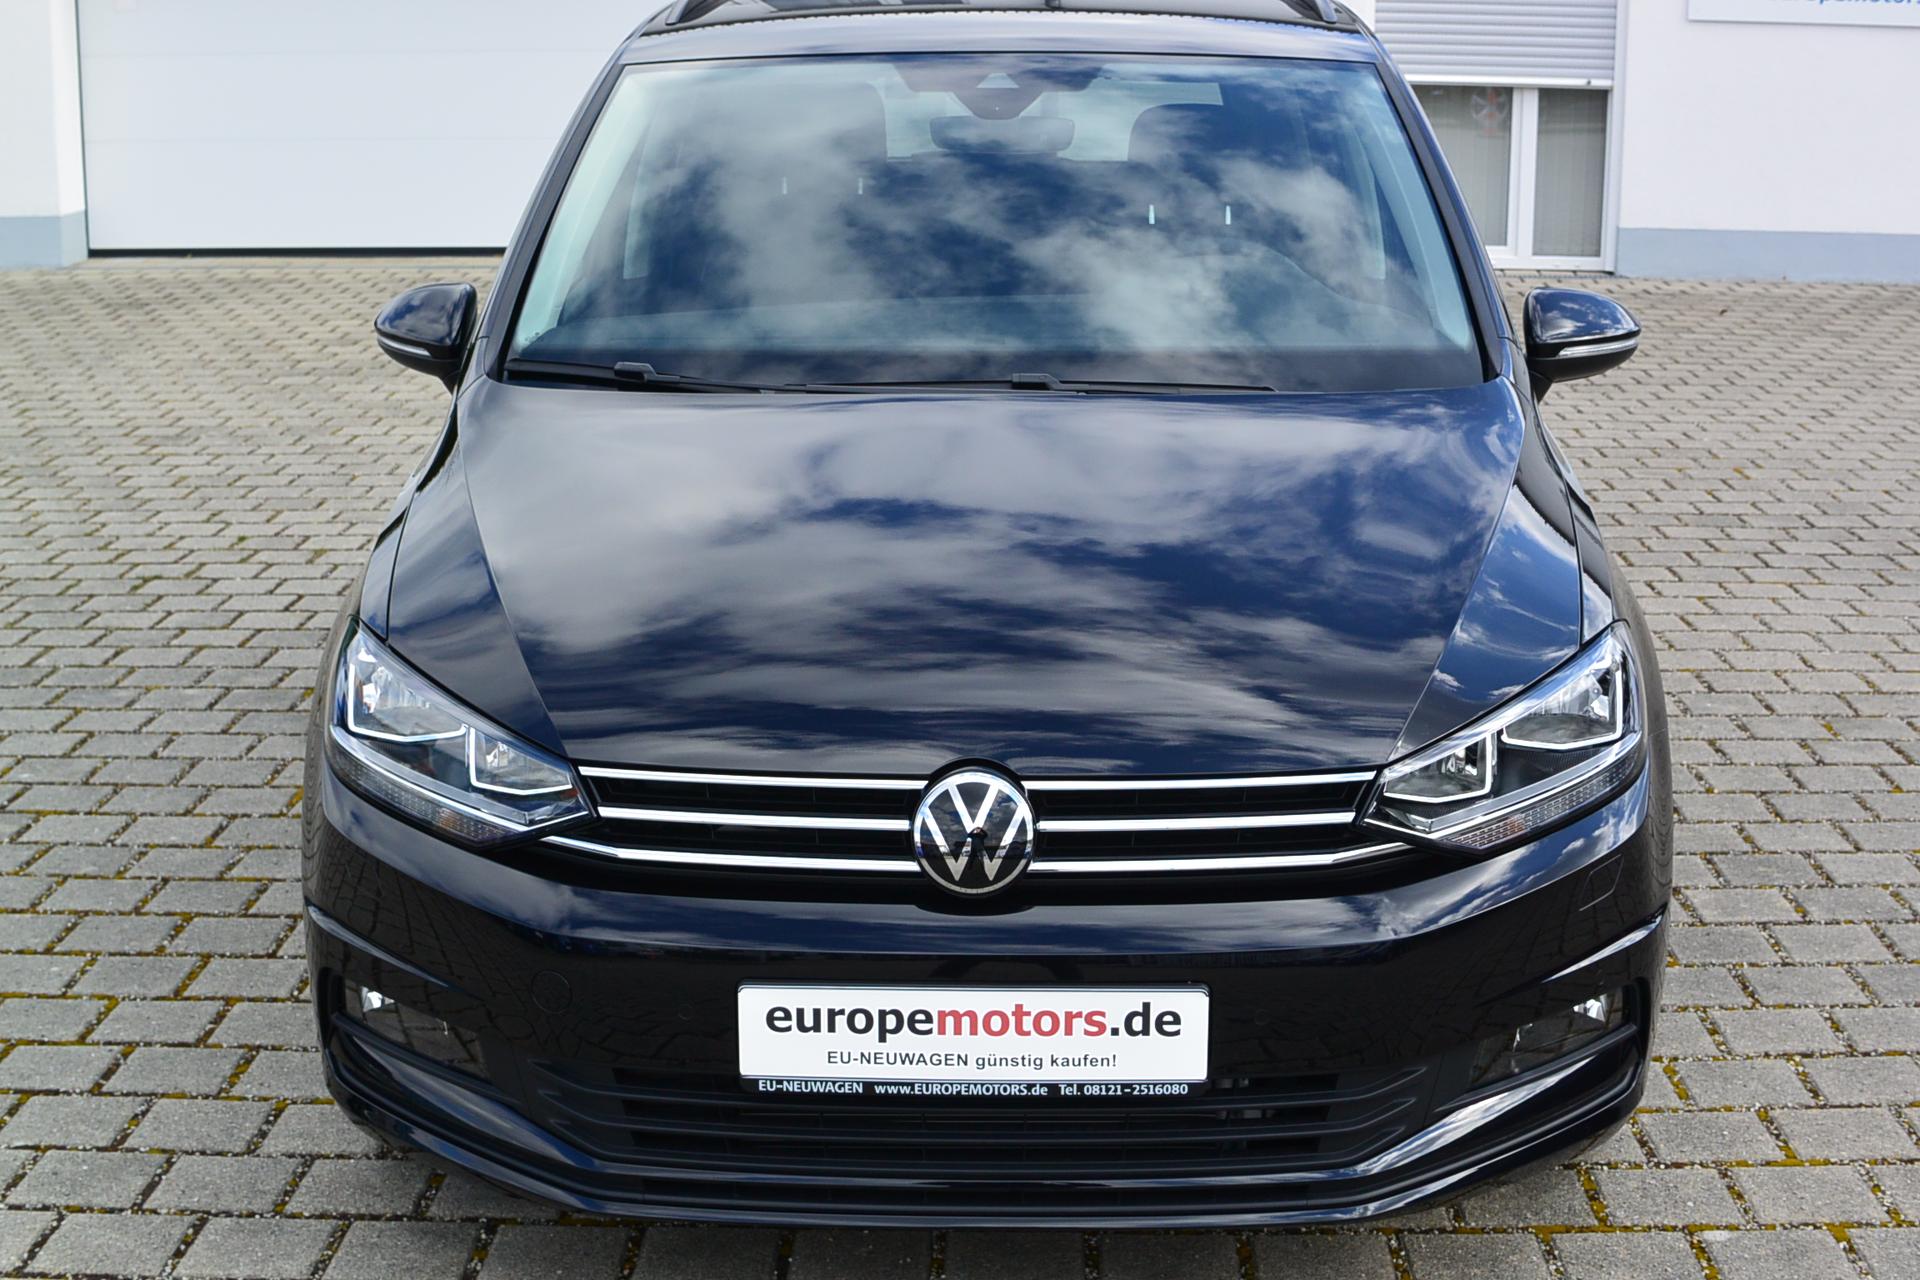 Supergünstige VW Touran Reimport EU Neuwagen nahe München